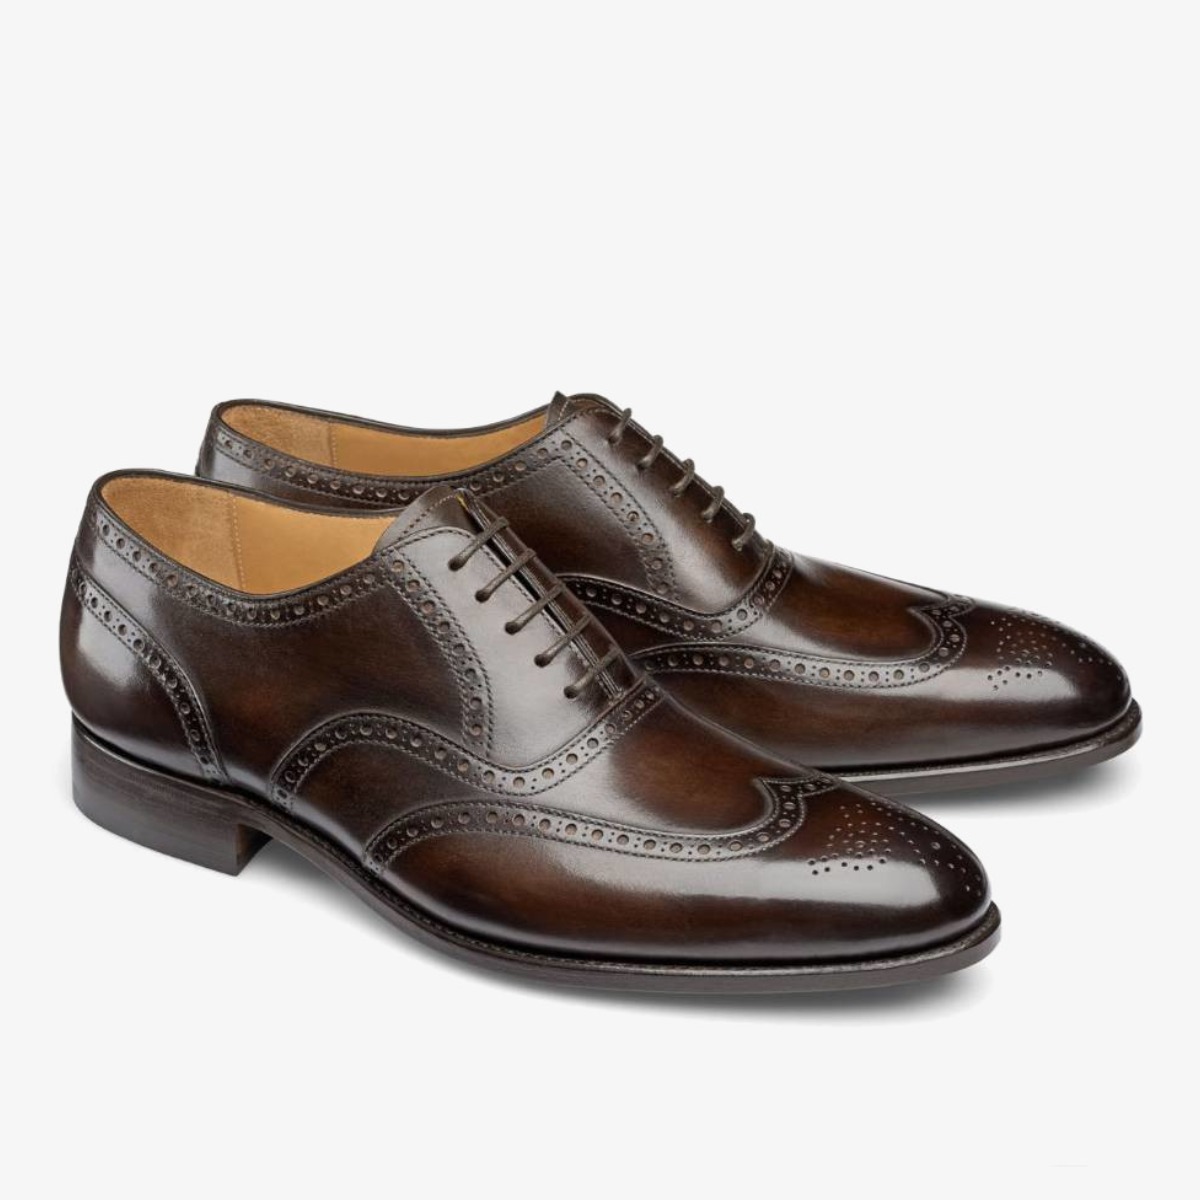 Carlos Santos 7273 Frank dark brown brogue men's oxford shoes